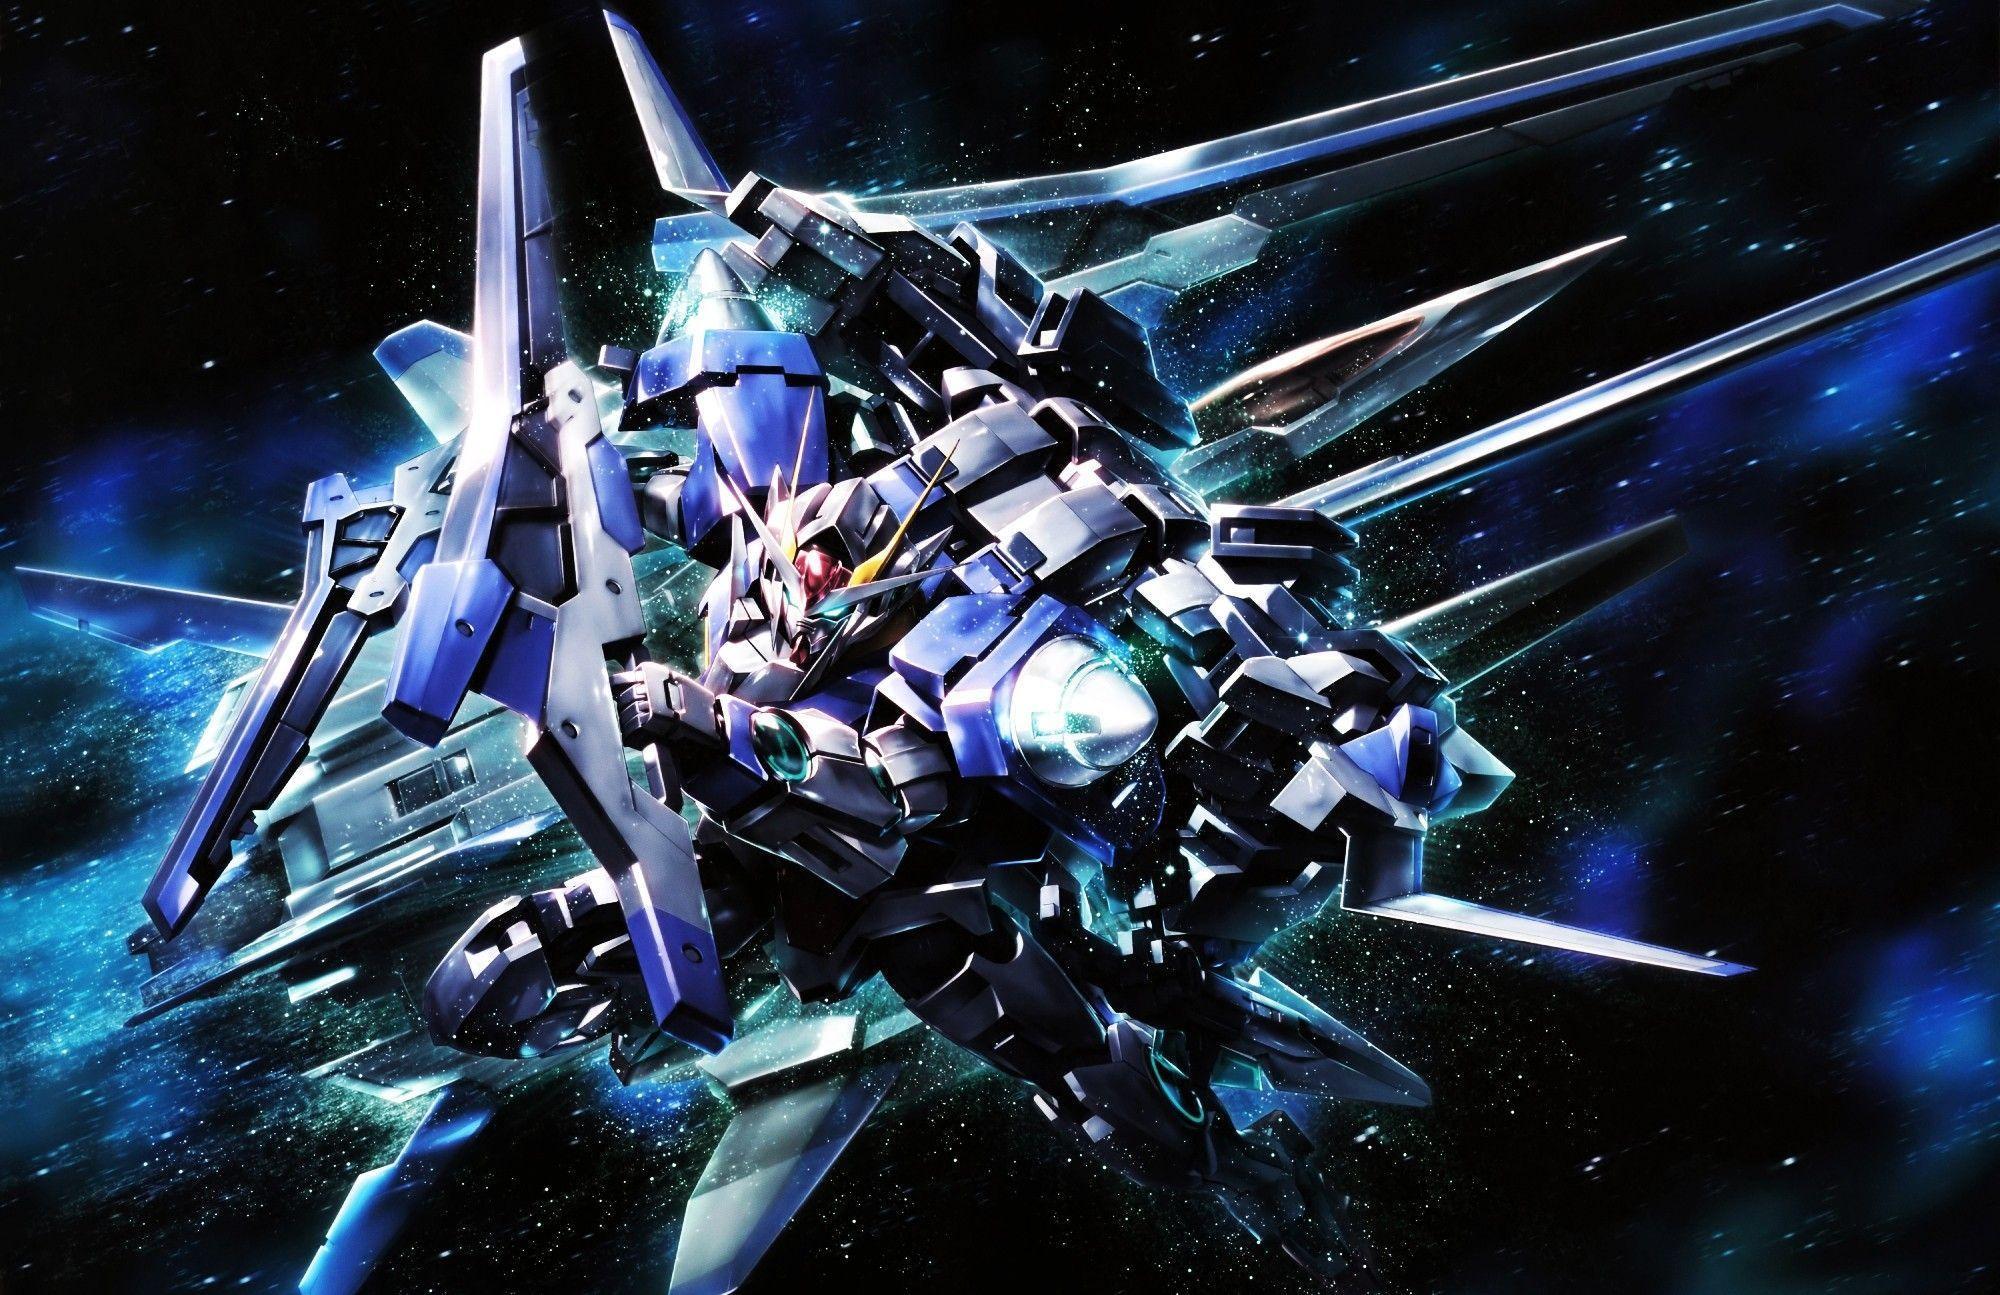 2000 x 1295 · jpeg - Gundam 00 Wallpapers - Wallpaper Cave